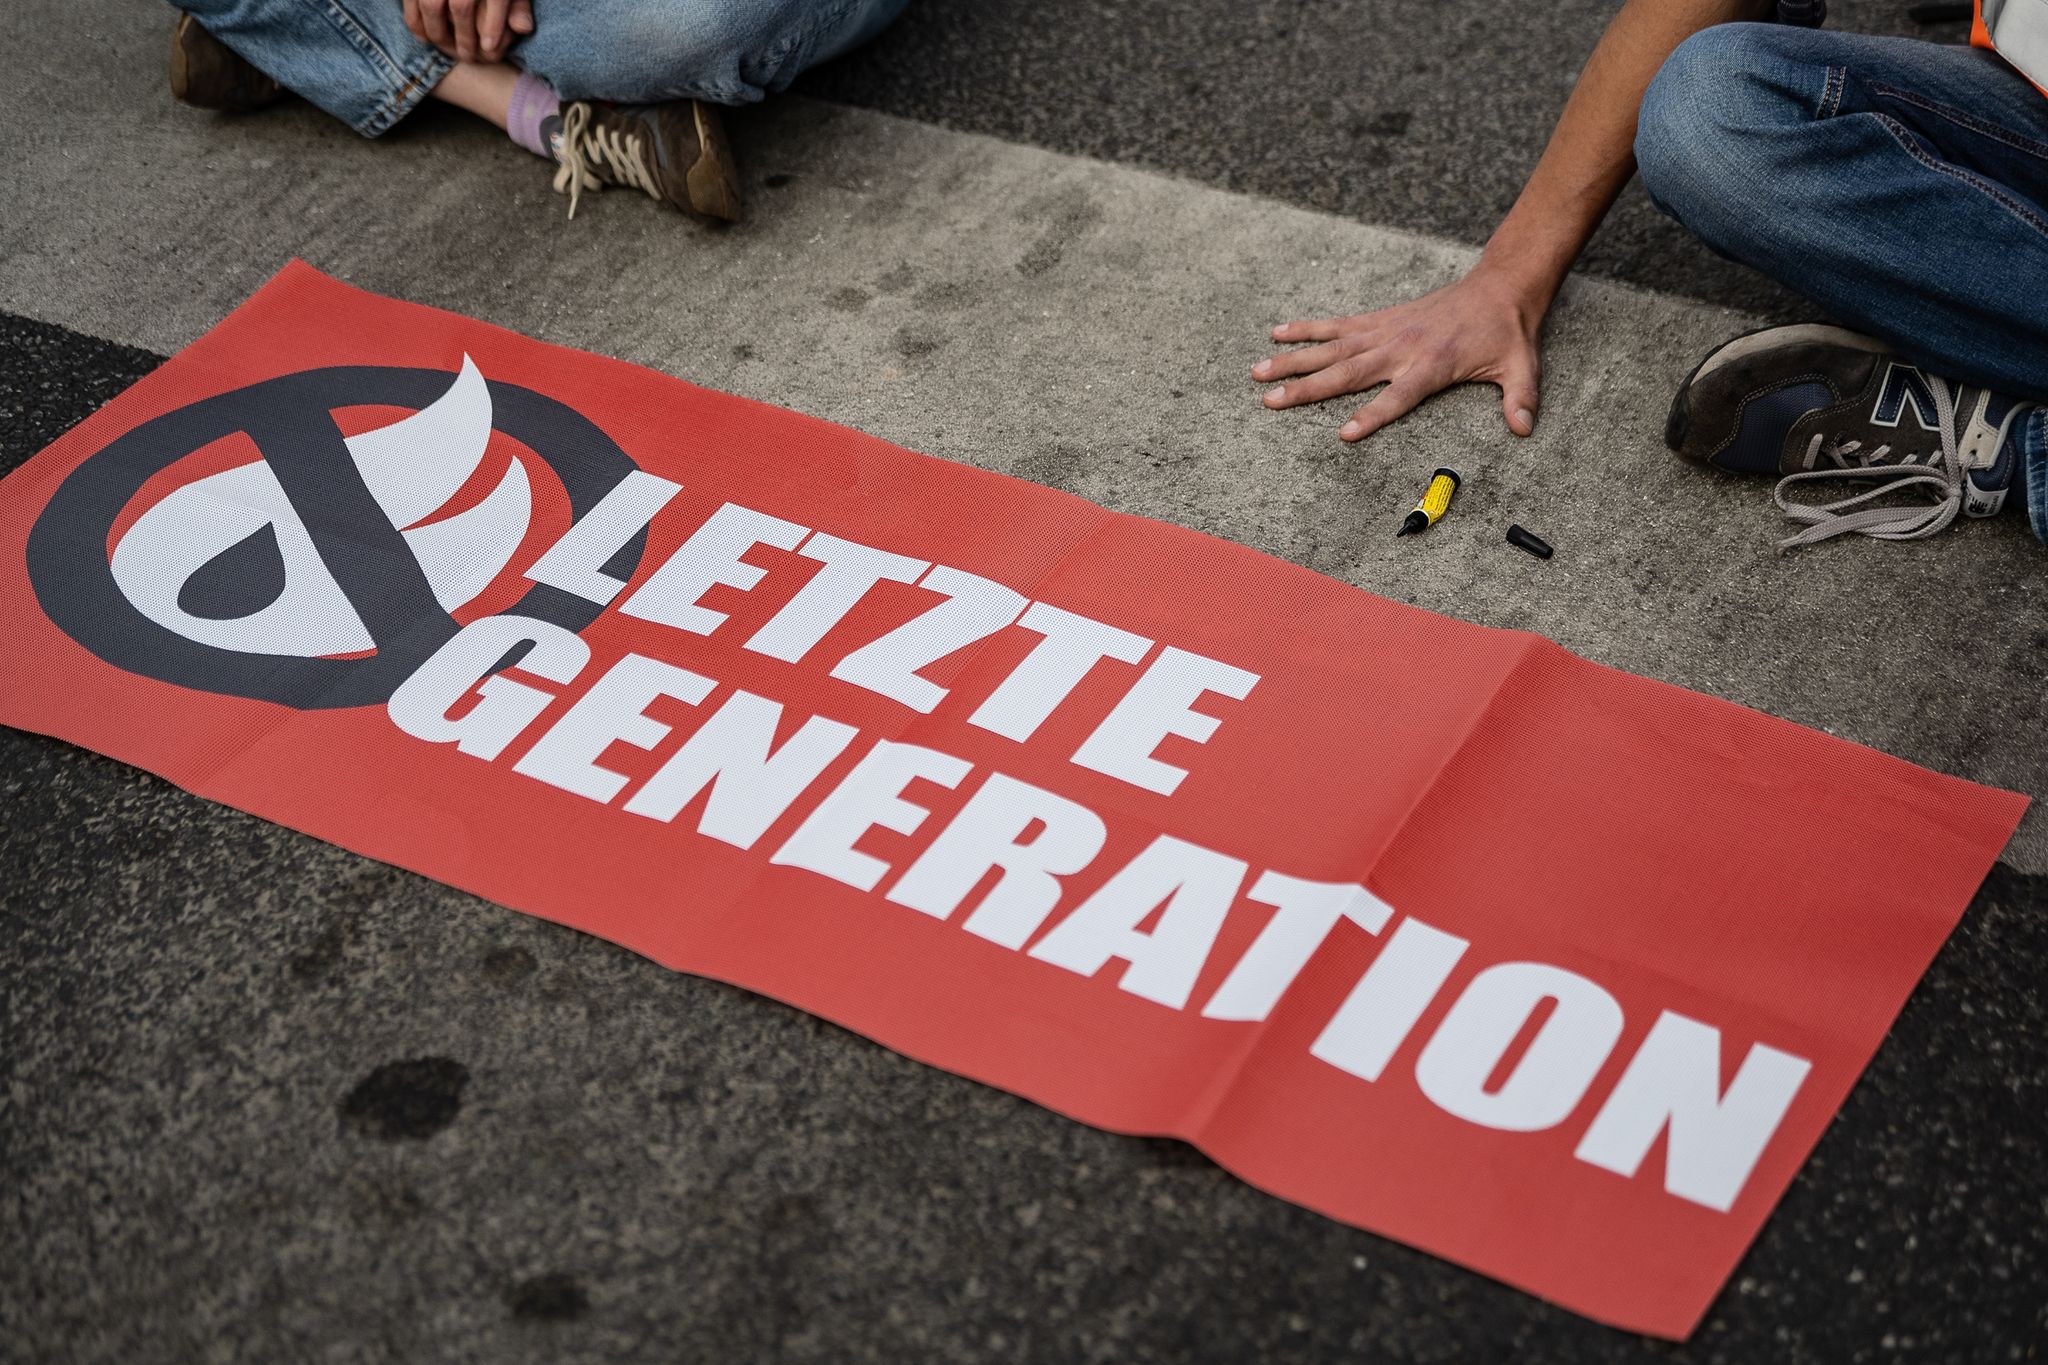 Ein Aktivist der Gruppe "Letzte Generation", der seine Hand selbst auf der Straße festgeklebt hat, blockiert eine Kreuzung.